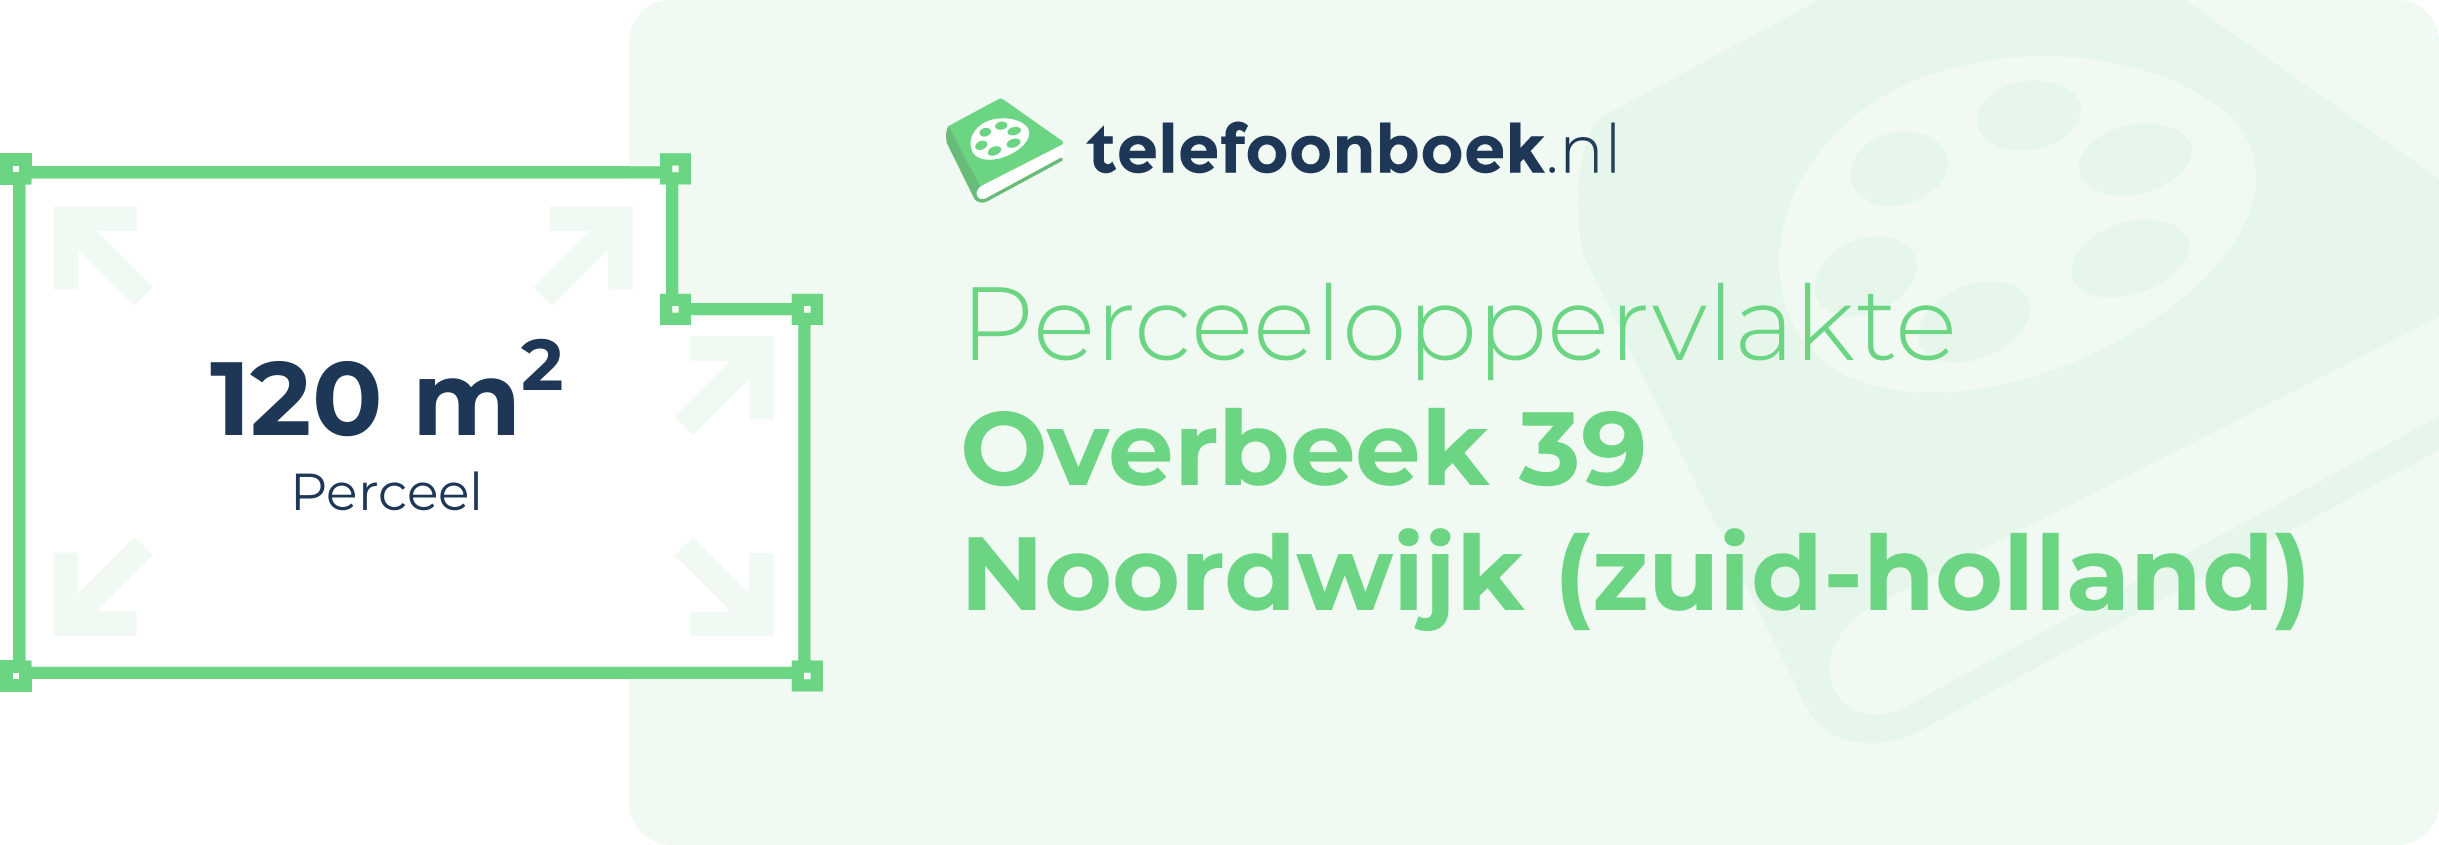 Perceeloppervlakte Overbeek 39 Noordwijk (Zuid-Holland)